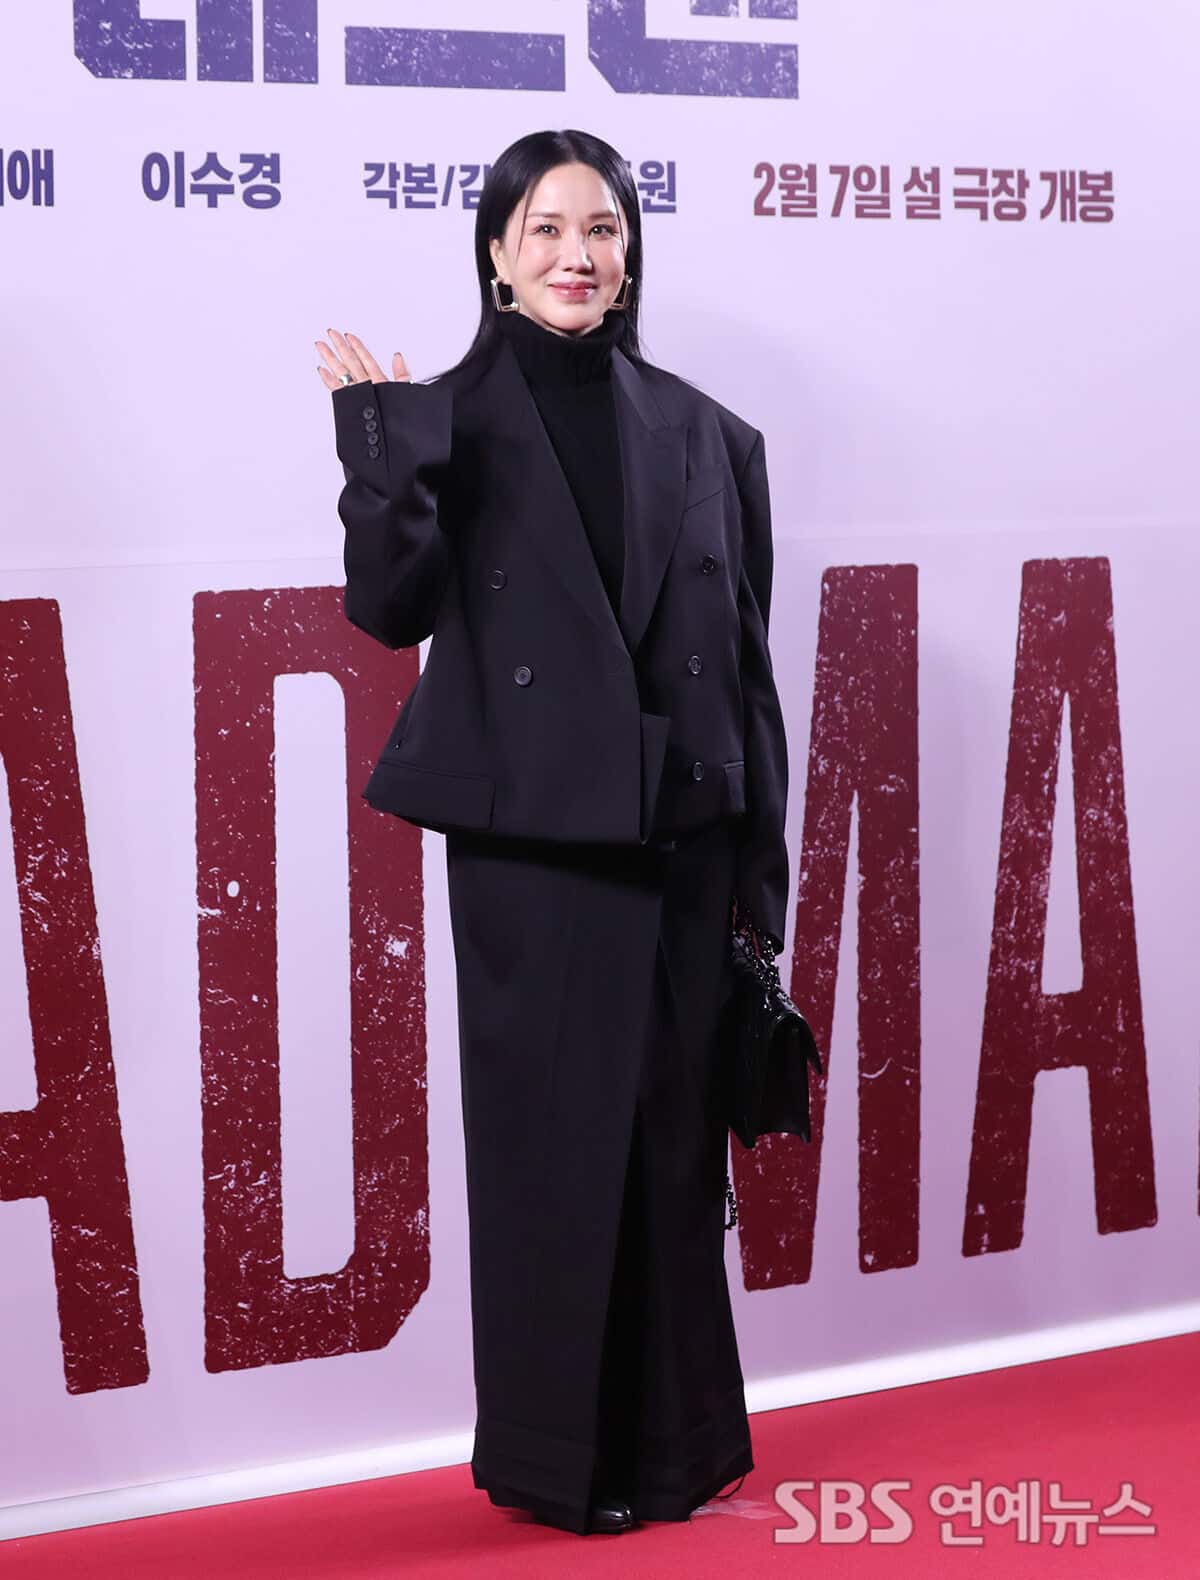 [ФОТО] Актеры Ю Сын Хо, Ом Чон Хва, Ли Ён Хи и другие на VIP-премьере фильма «Мертвец»